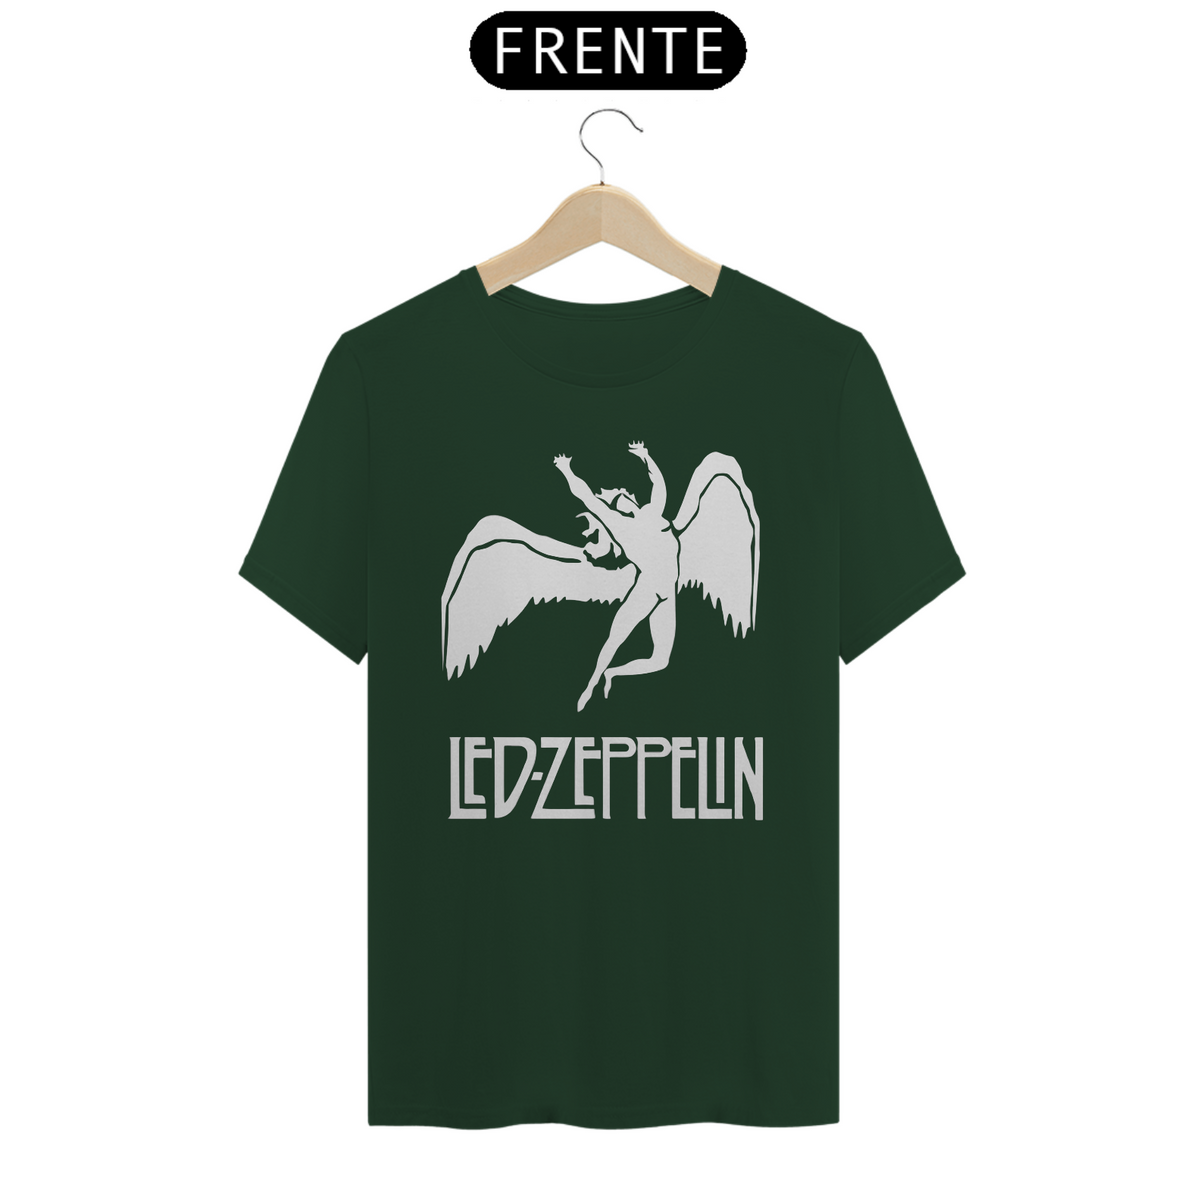 Nome do produto: Led Zeppelin